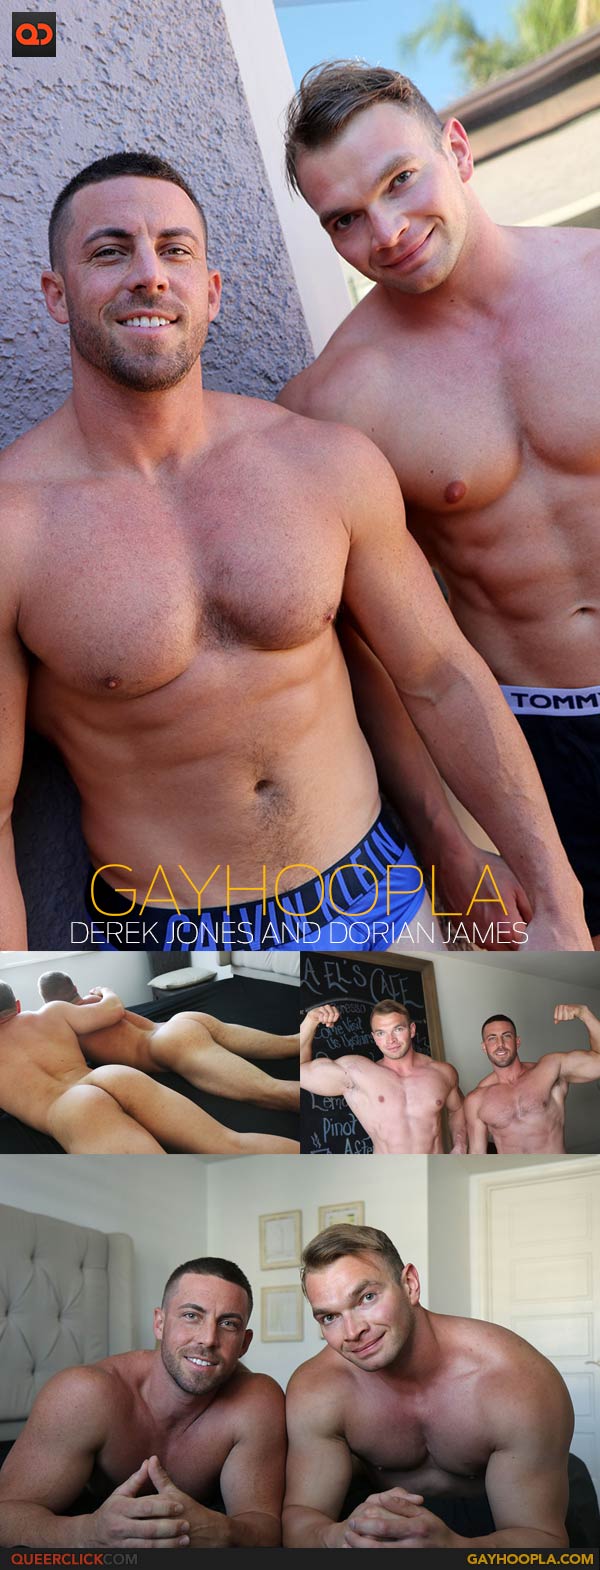 GayHoopla: Derek Jones and Dorian James